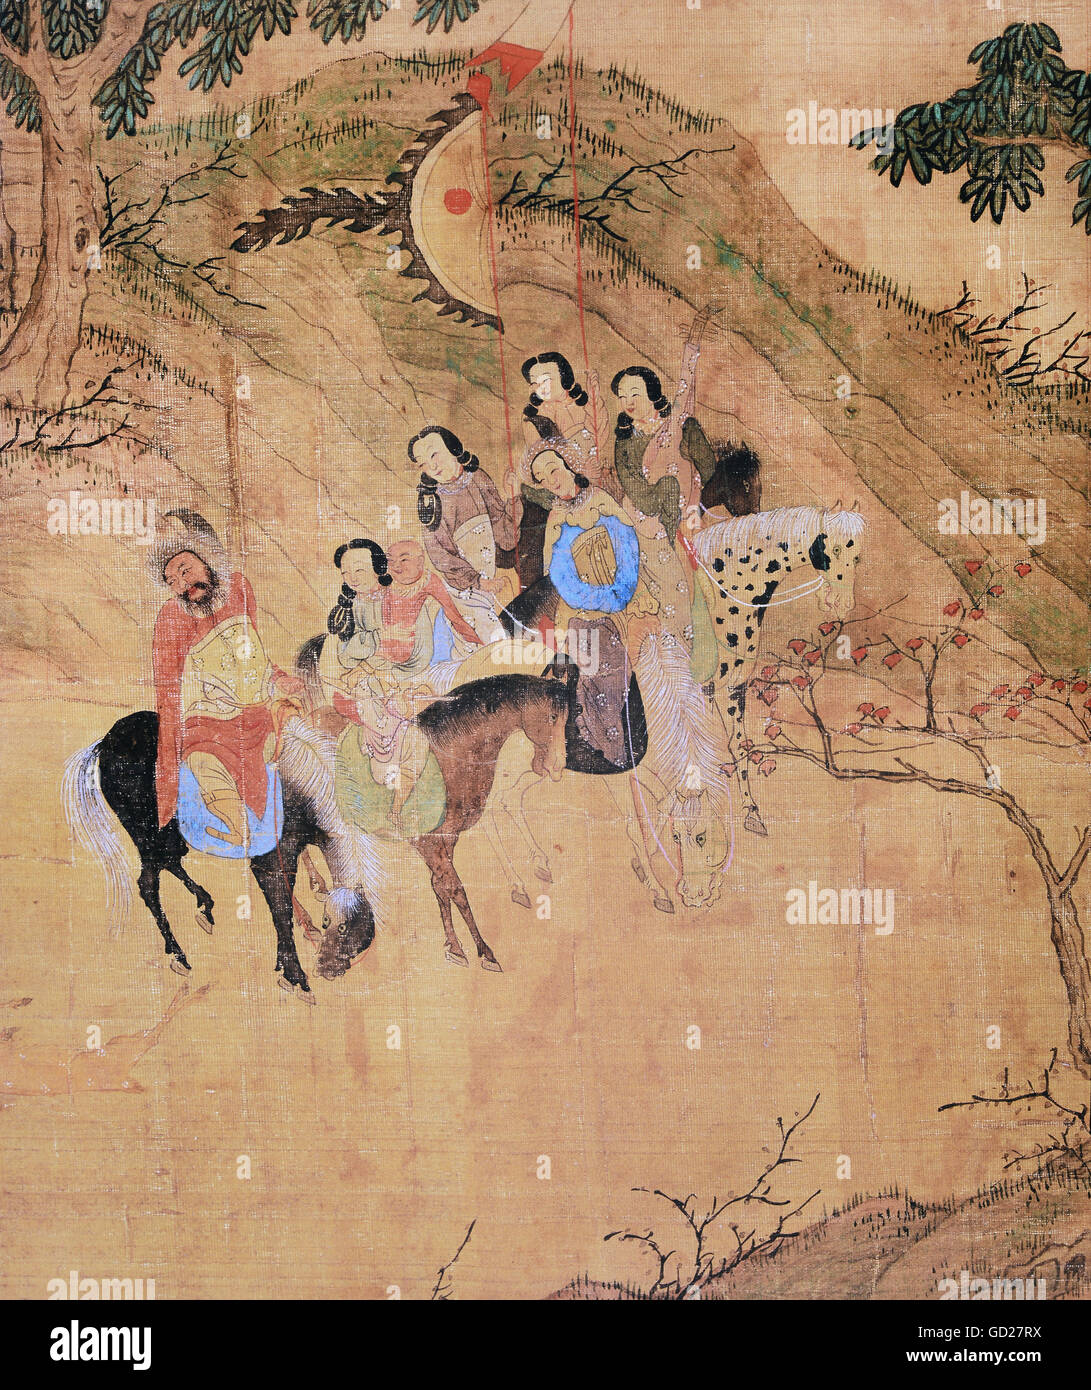 Las bellas artes, la pintura, el emperador Temur en la caza, 308 x 42 cm,  detalle, desplácese a la pintura sobre seda, circa 1300, colección privada,  los derechos de autor del artista